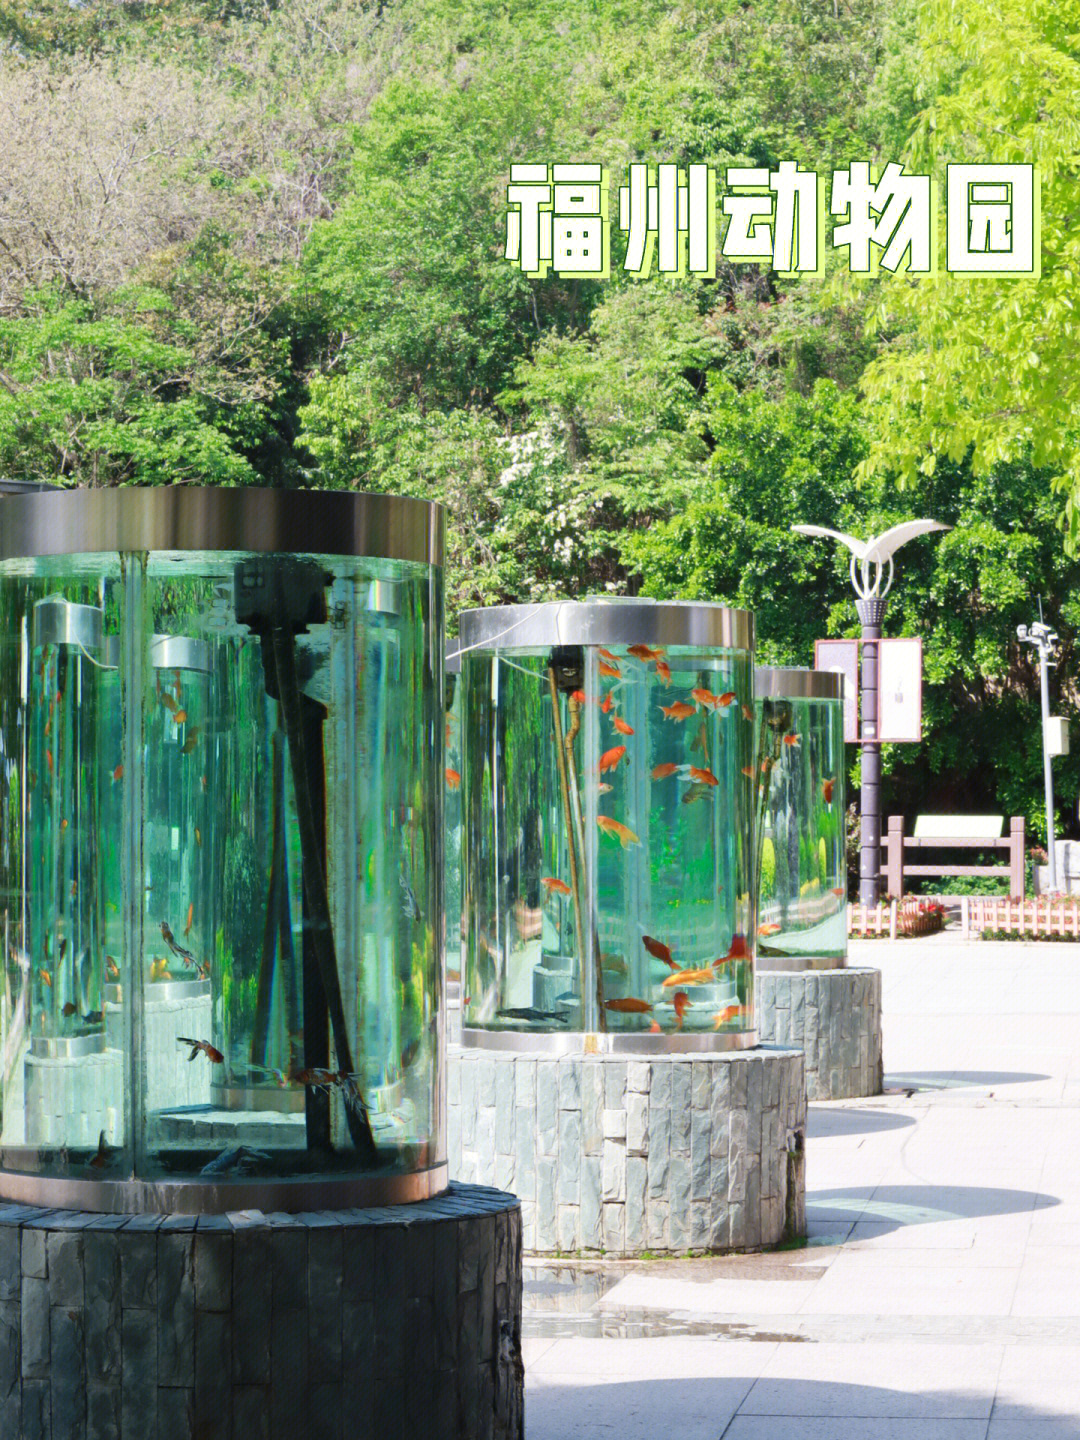 福州野生动物园地址图片